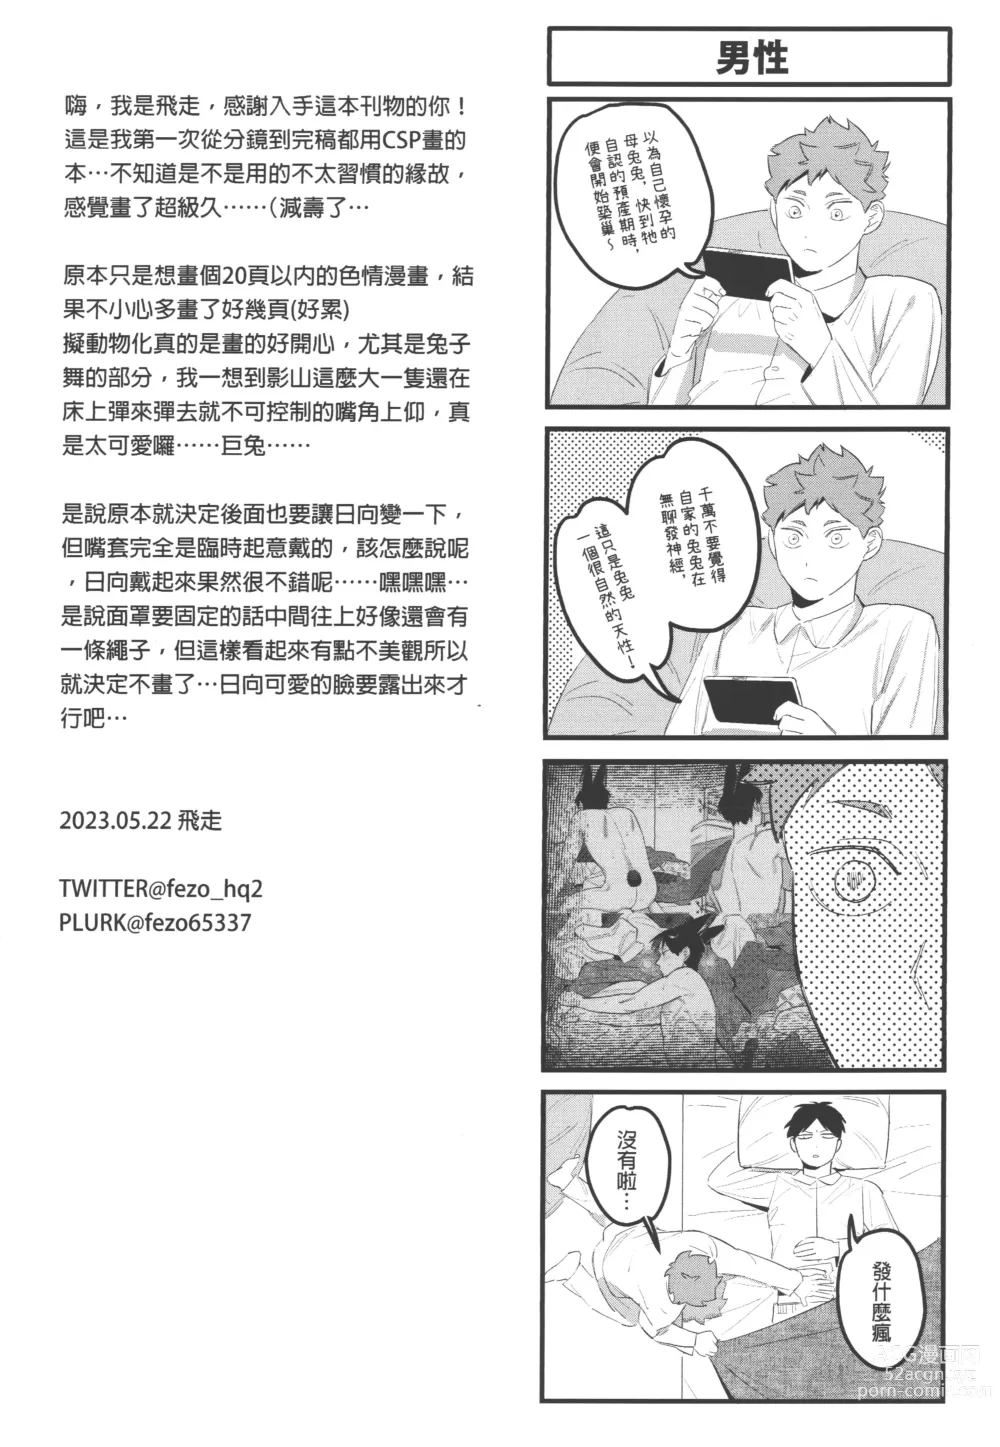 Page 29 of doujinshi 影山飛雄變成兔子了!